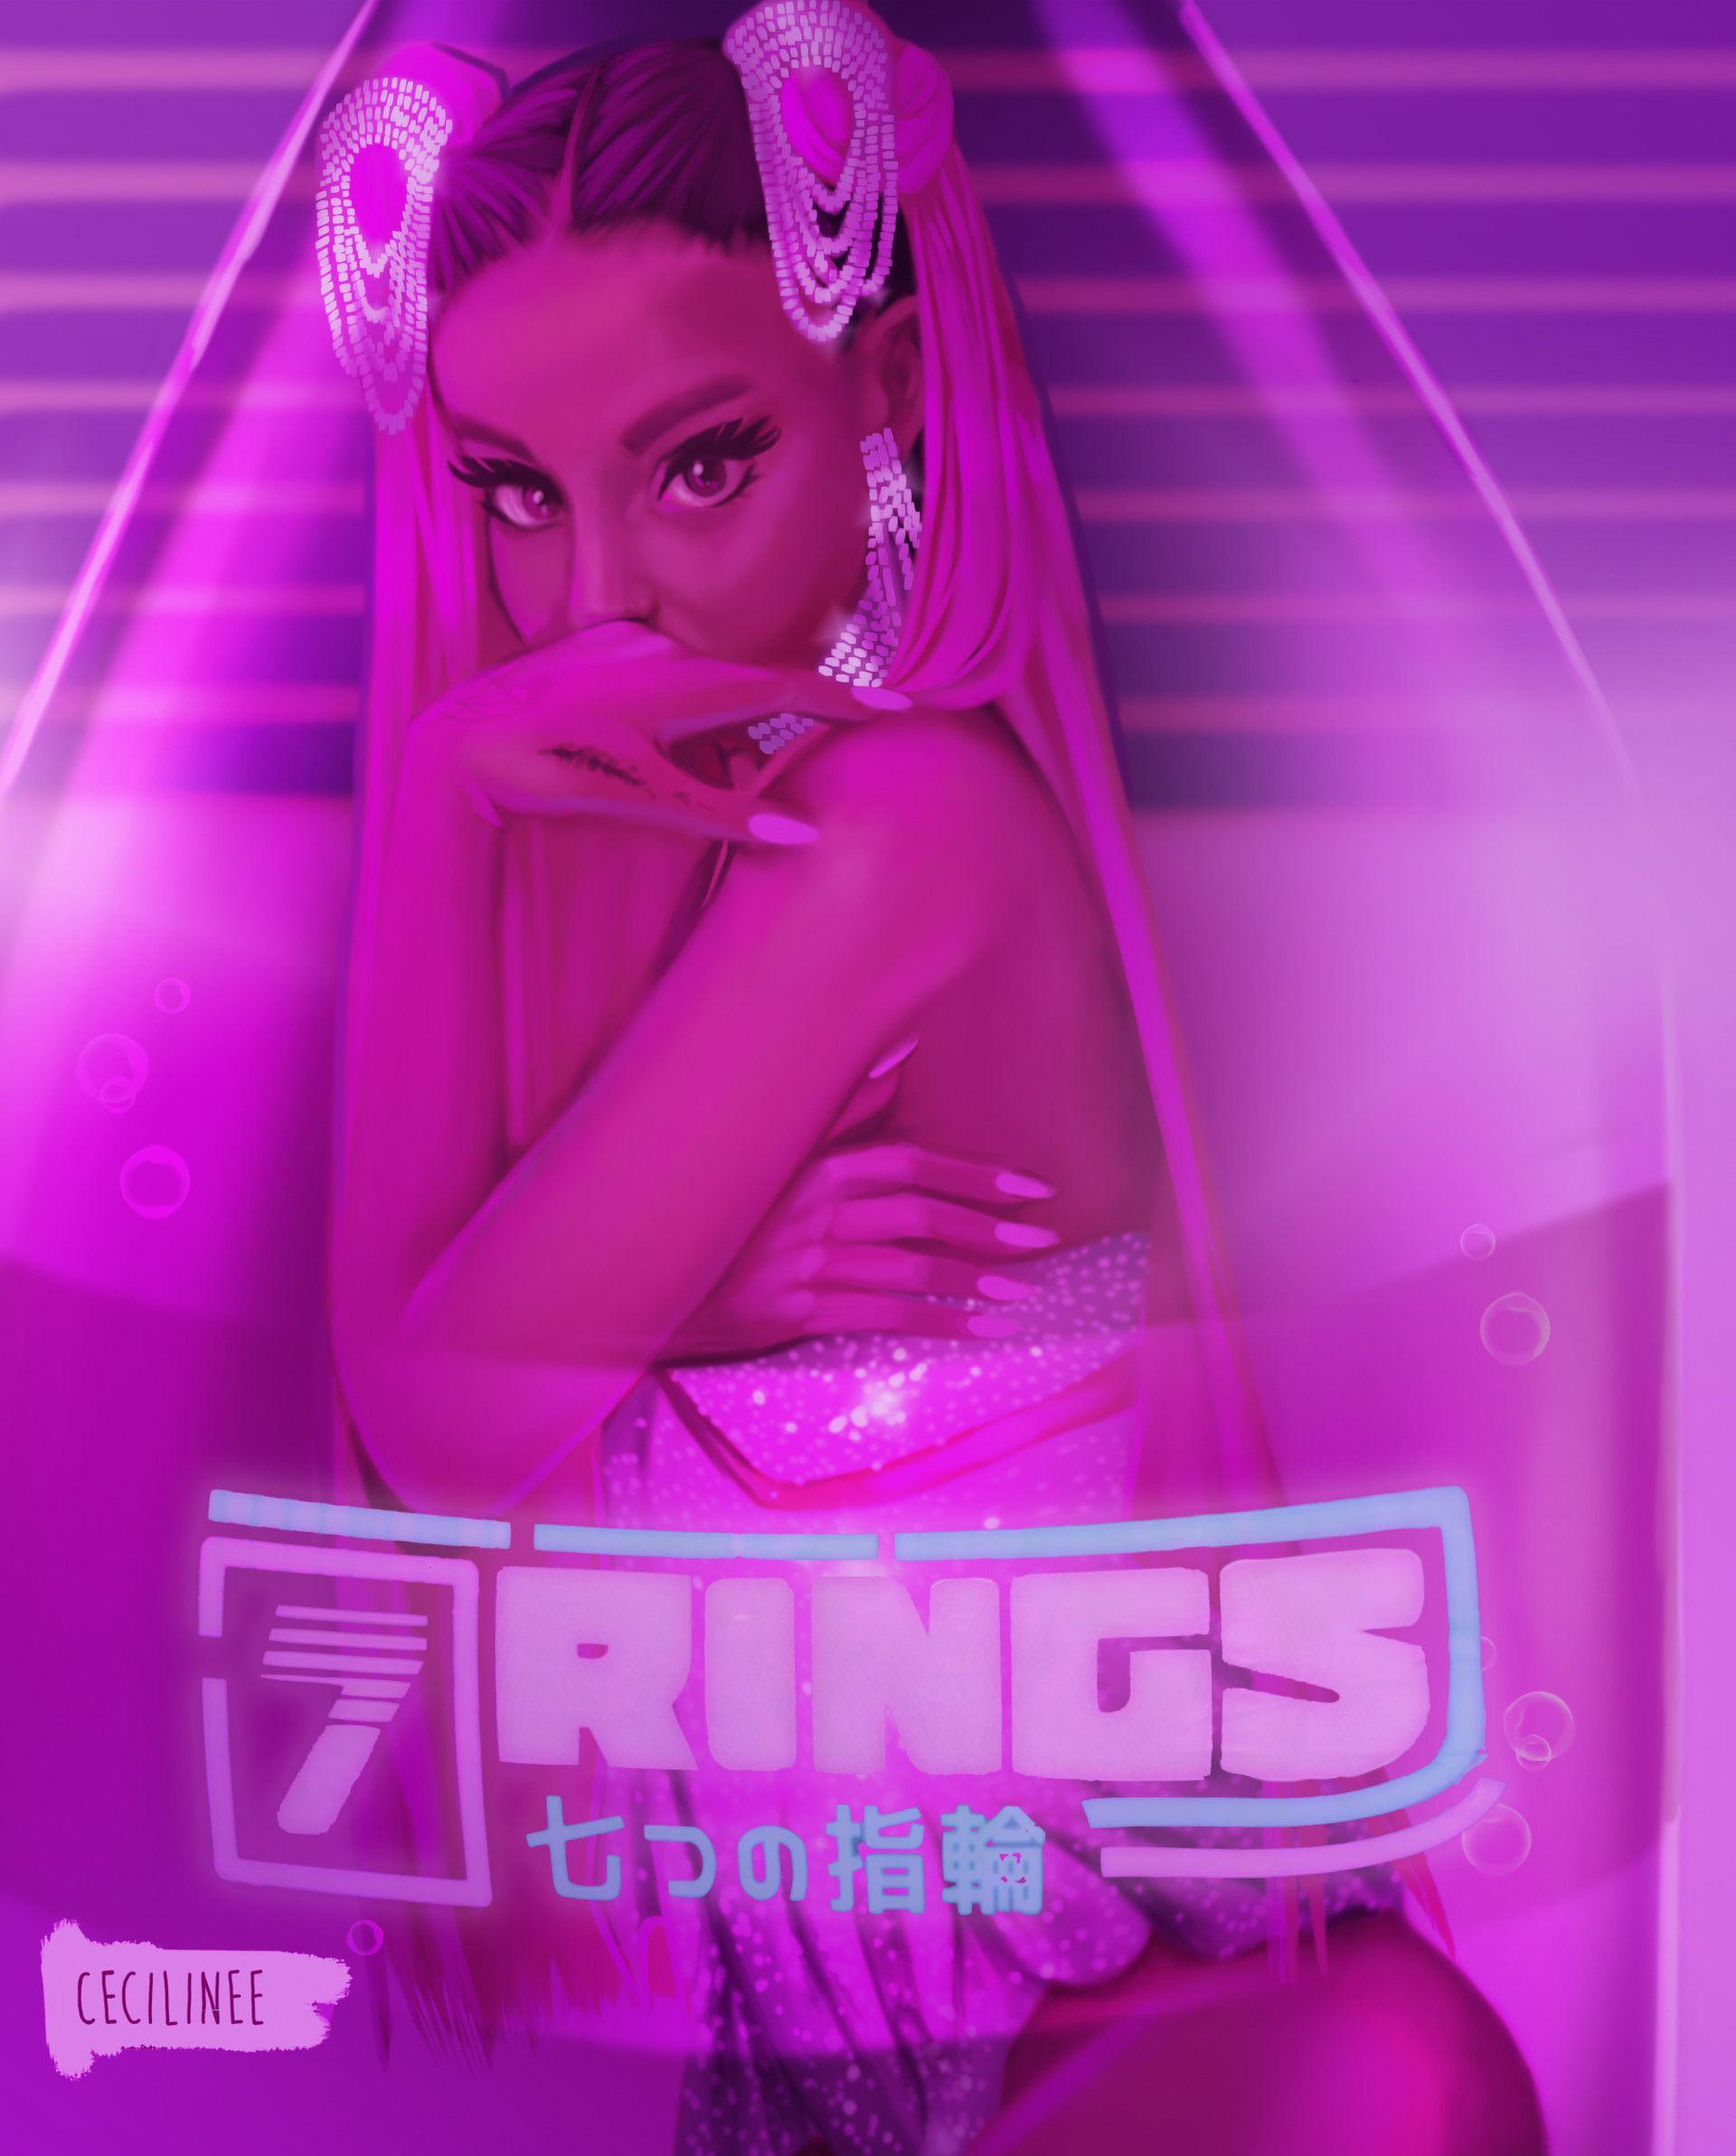 Ariana Grande 7 Rings Wallpapers - Top Free Ariana Grande 7 Rings ...